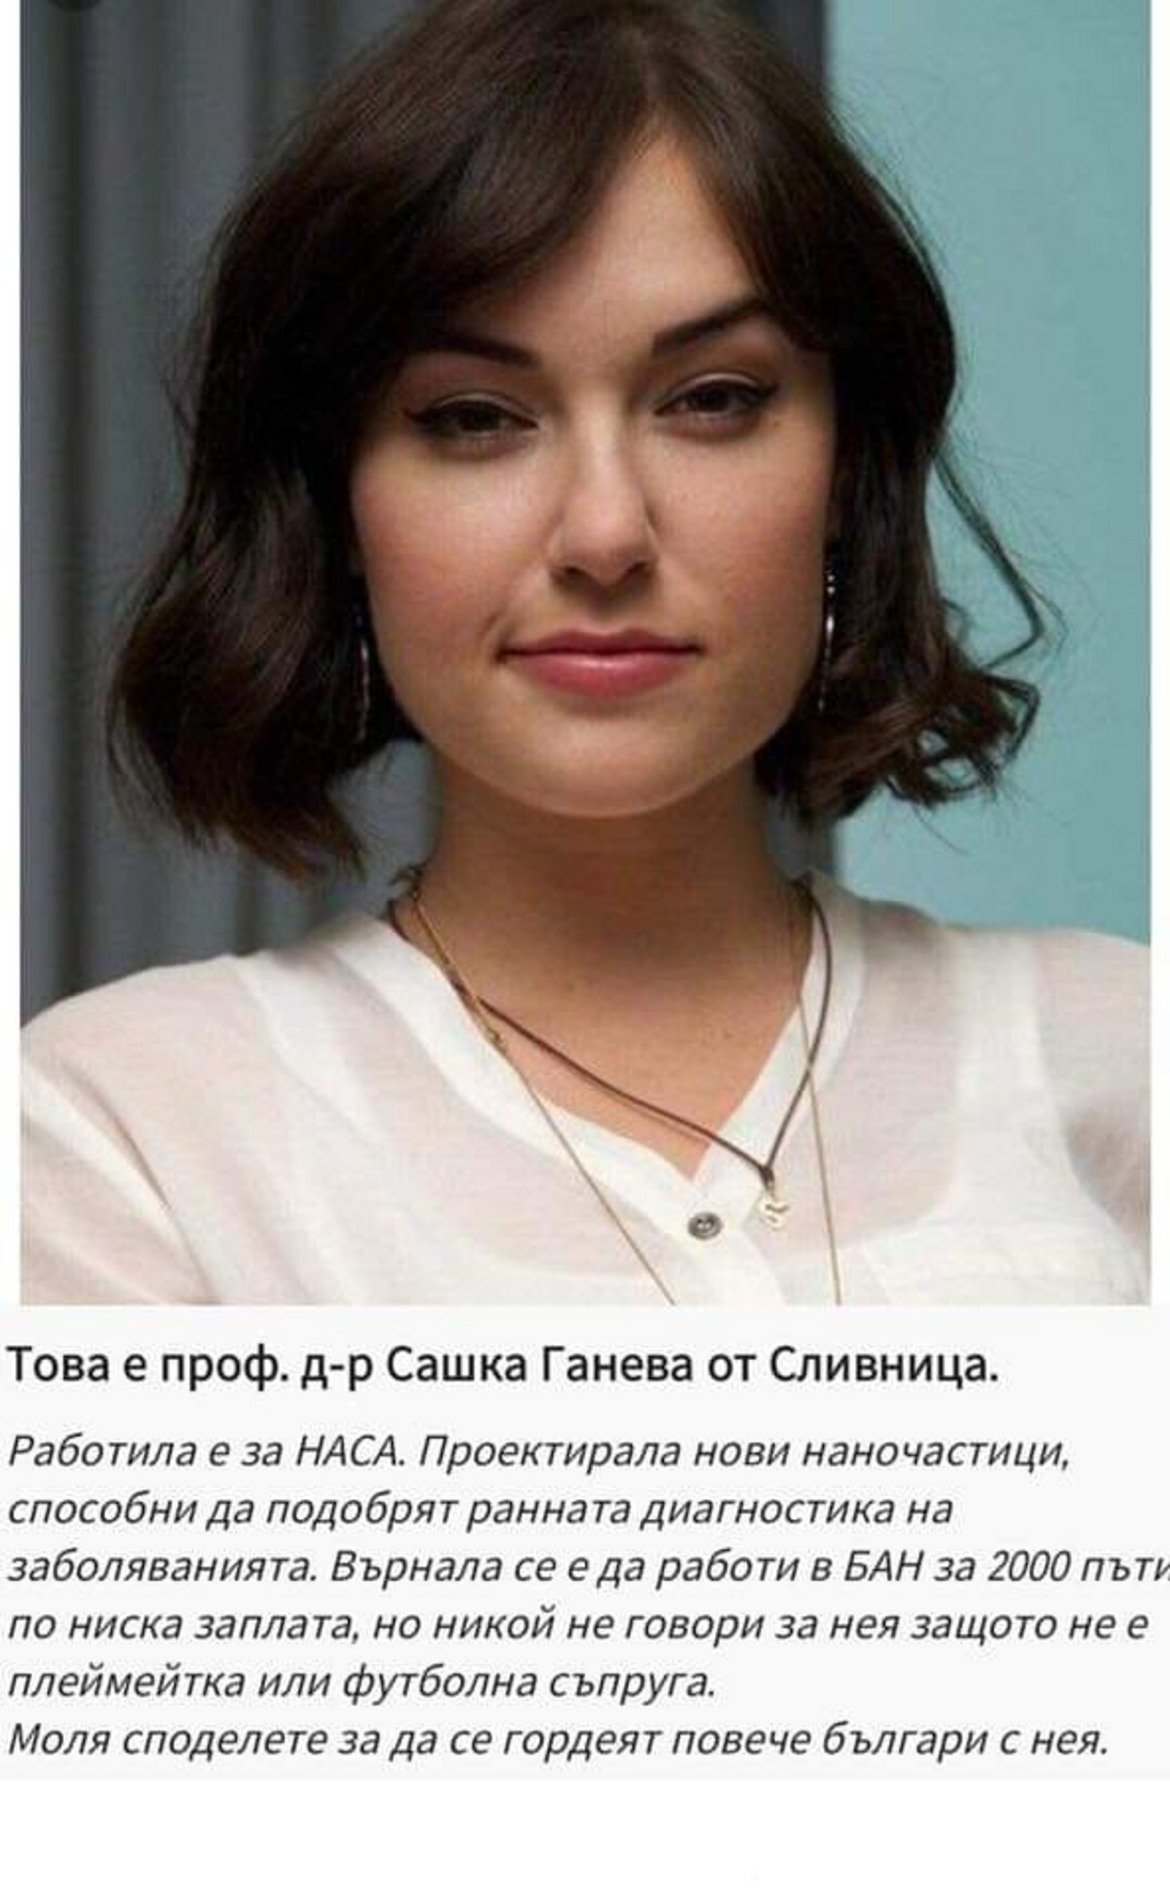 Задълбочено журналистическо проучване показа: работното й място не е БАН, а тя самата не е от България. Била актриса. Т.е. внимавайте какво споделяте!